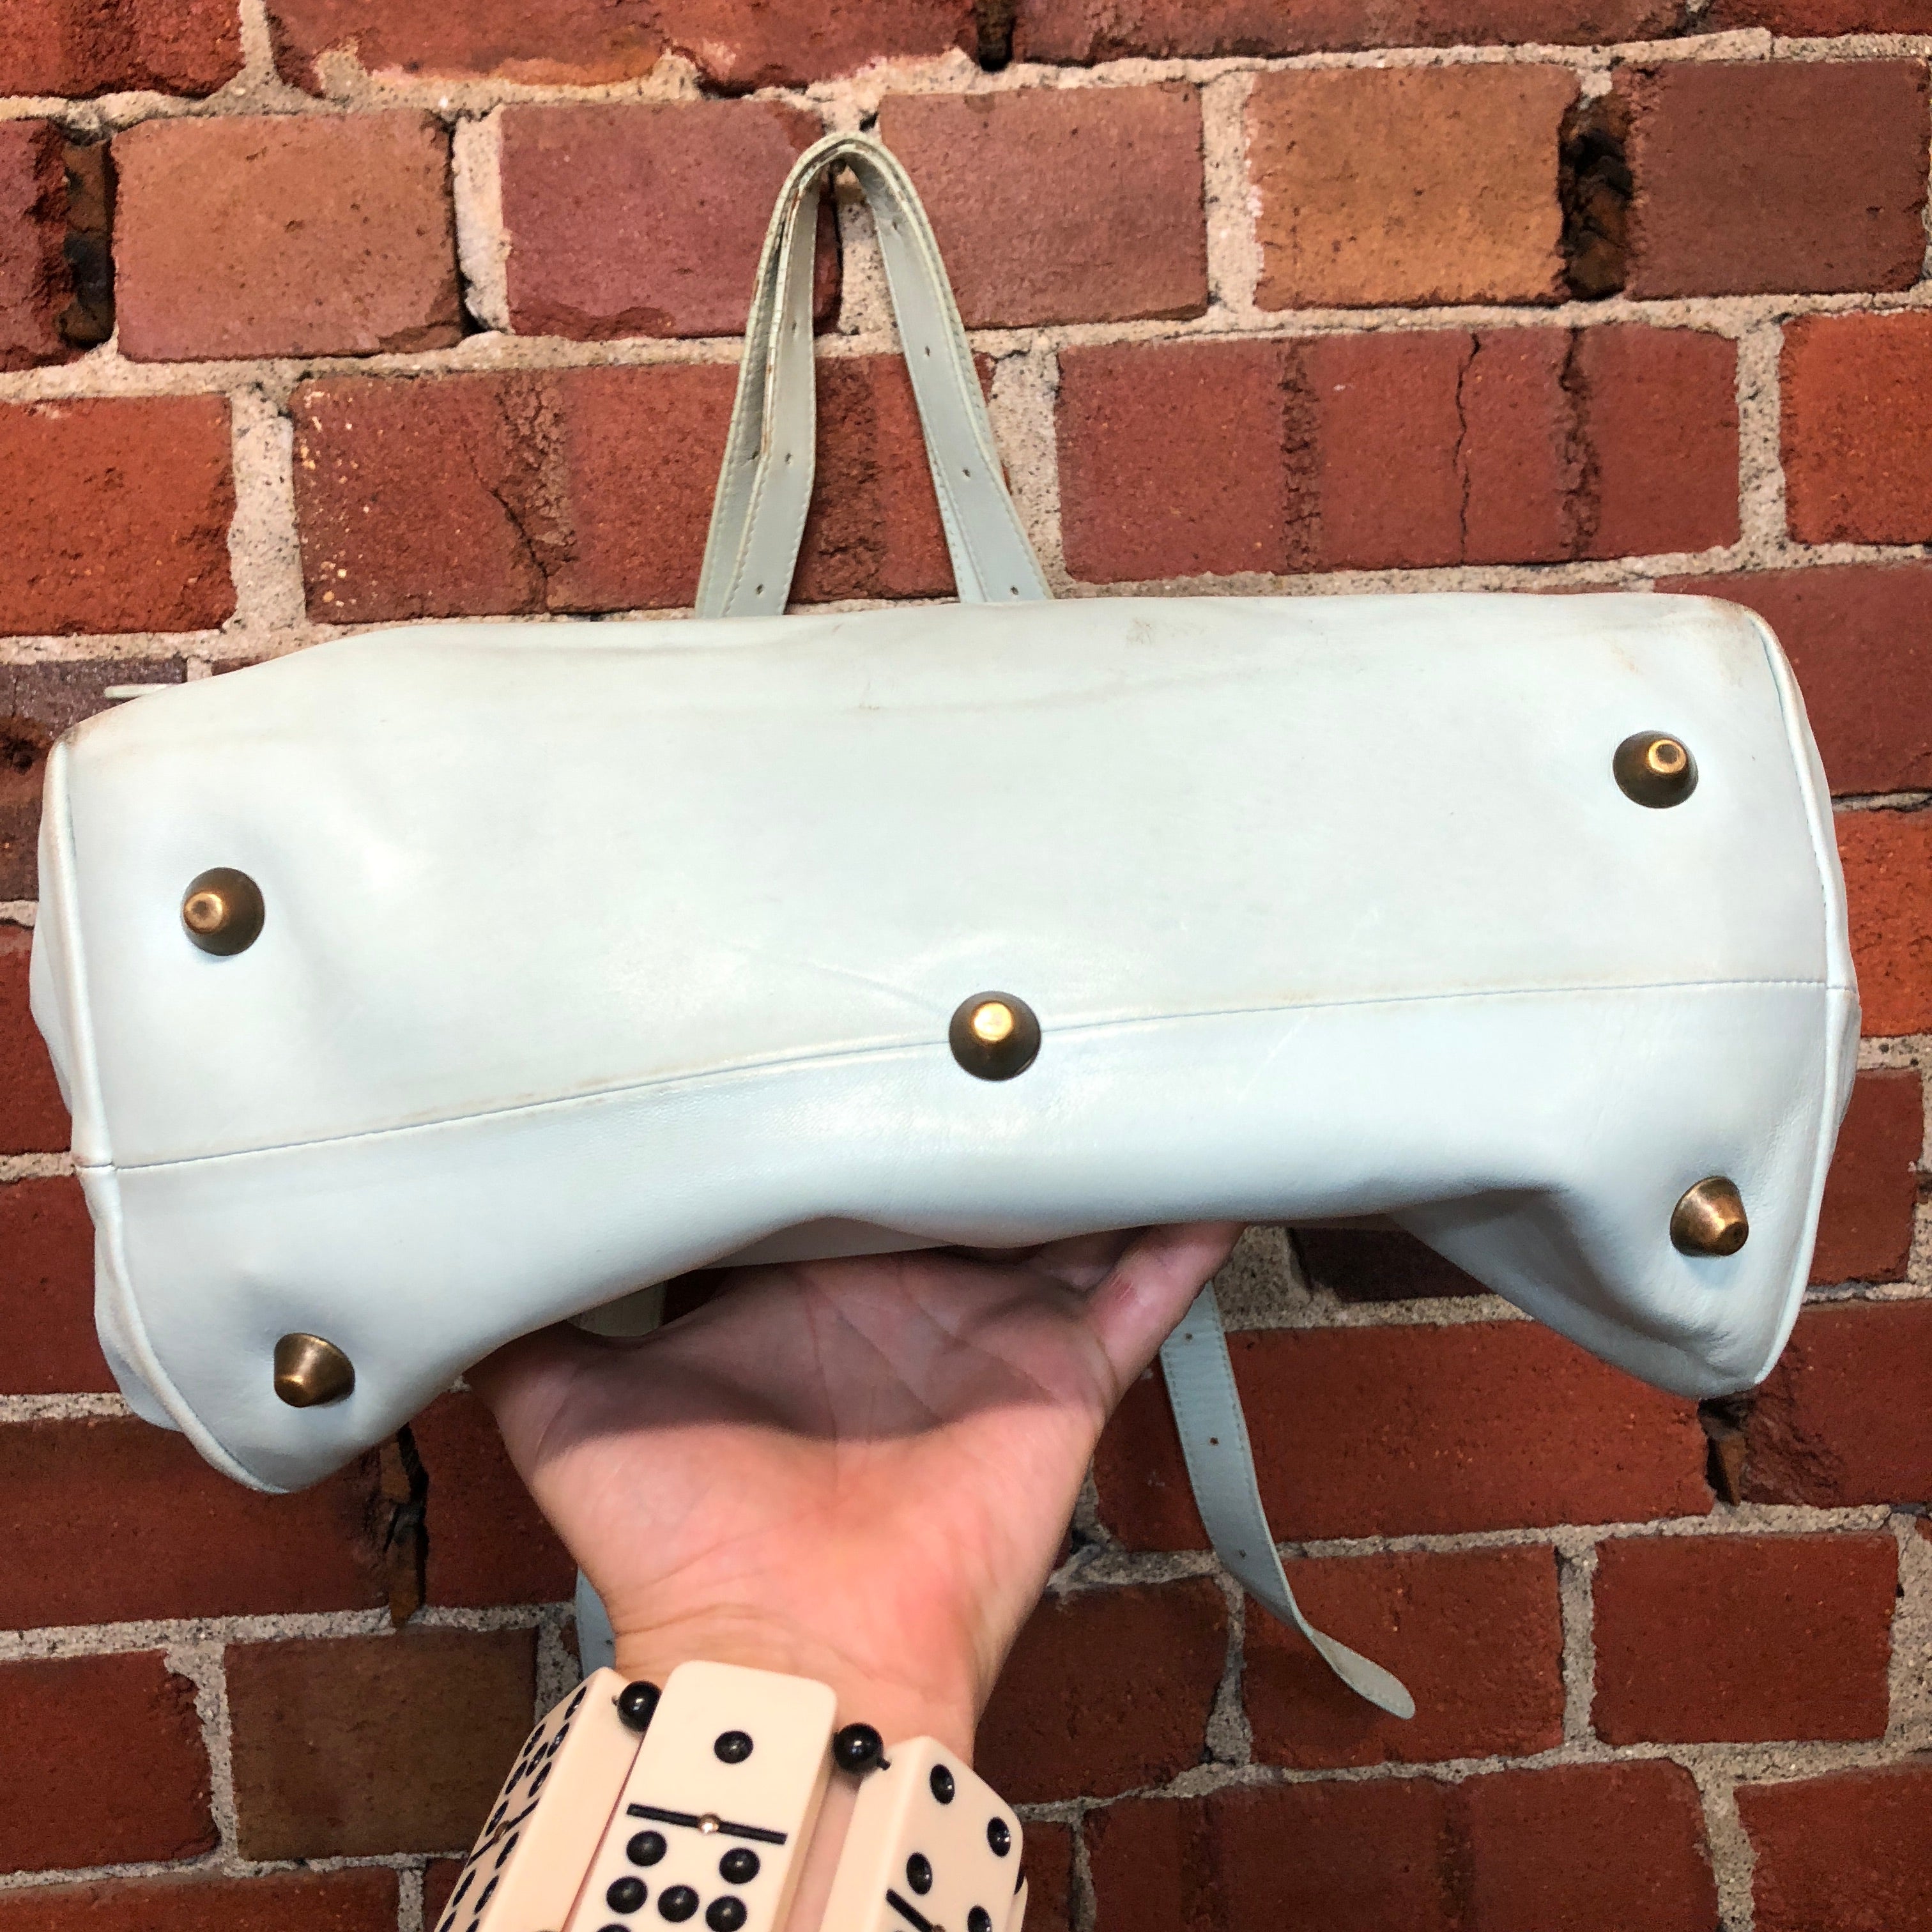 MARGIELA 'white label' leather handbag